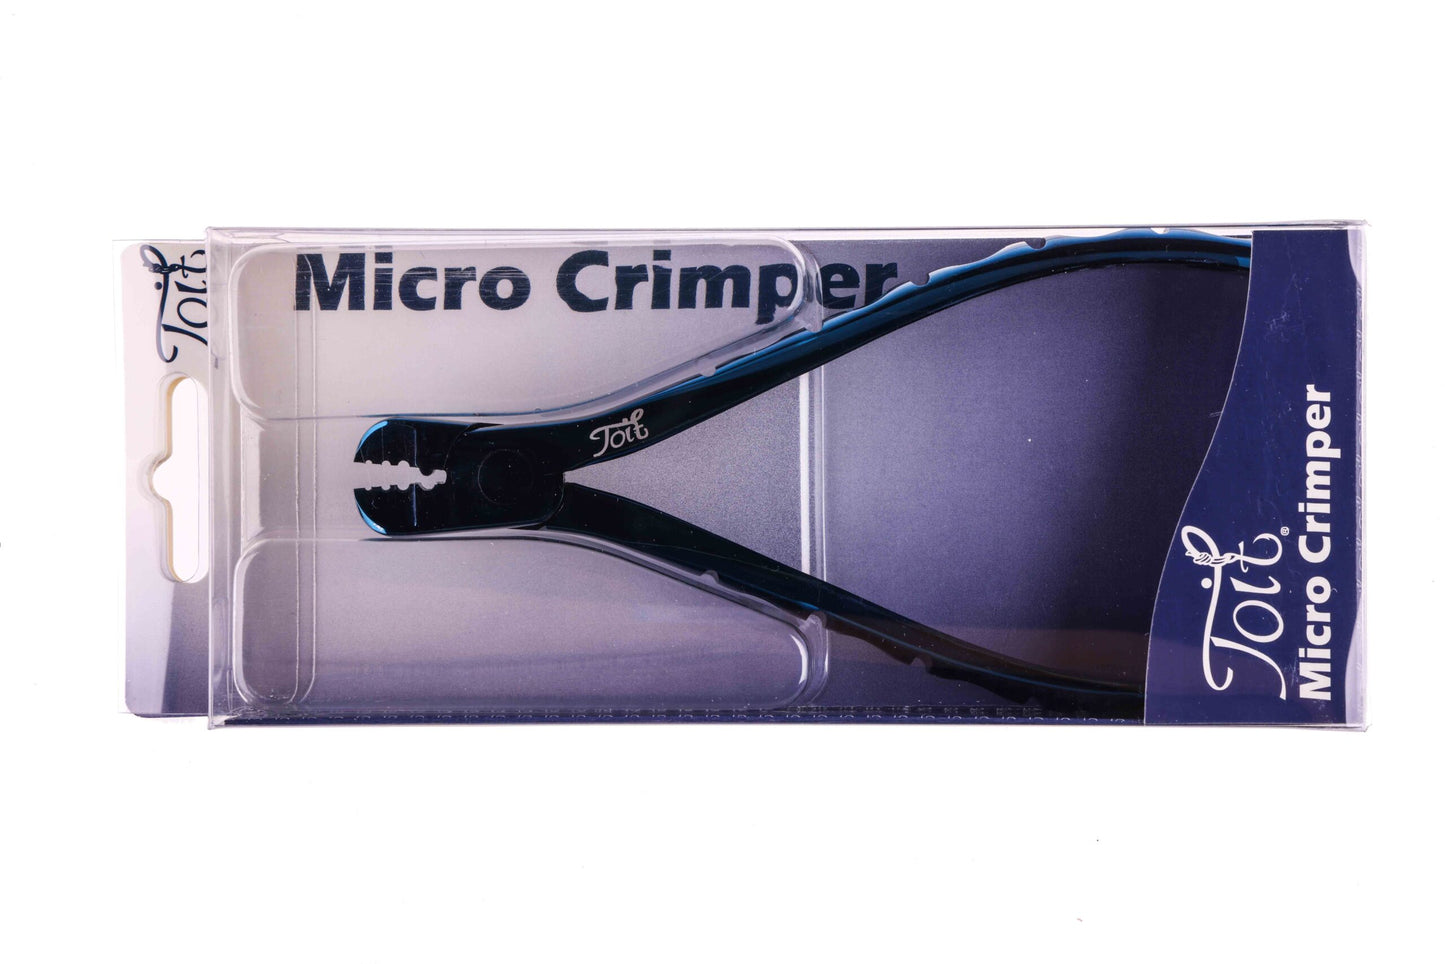 Toit-9 Micro Crimper